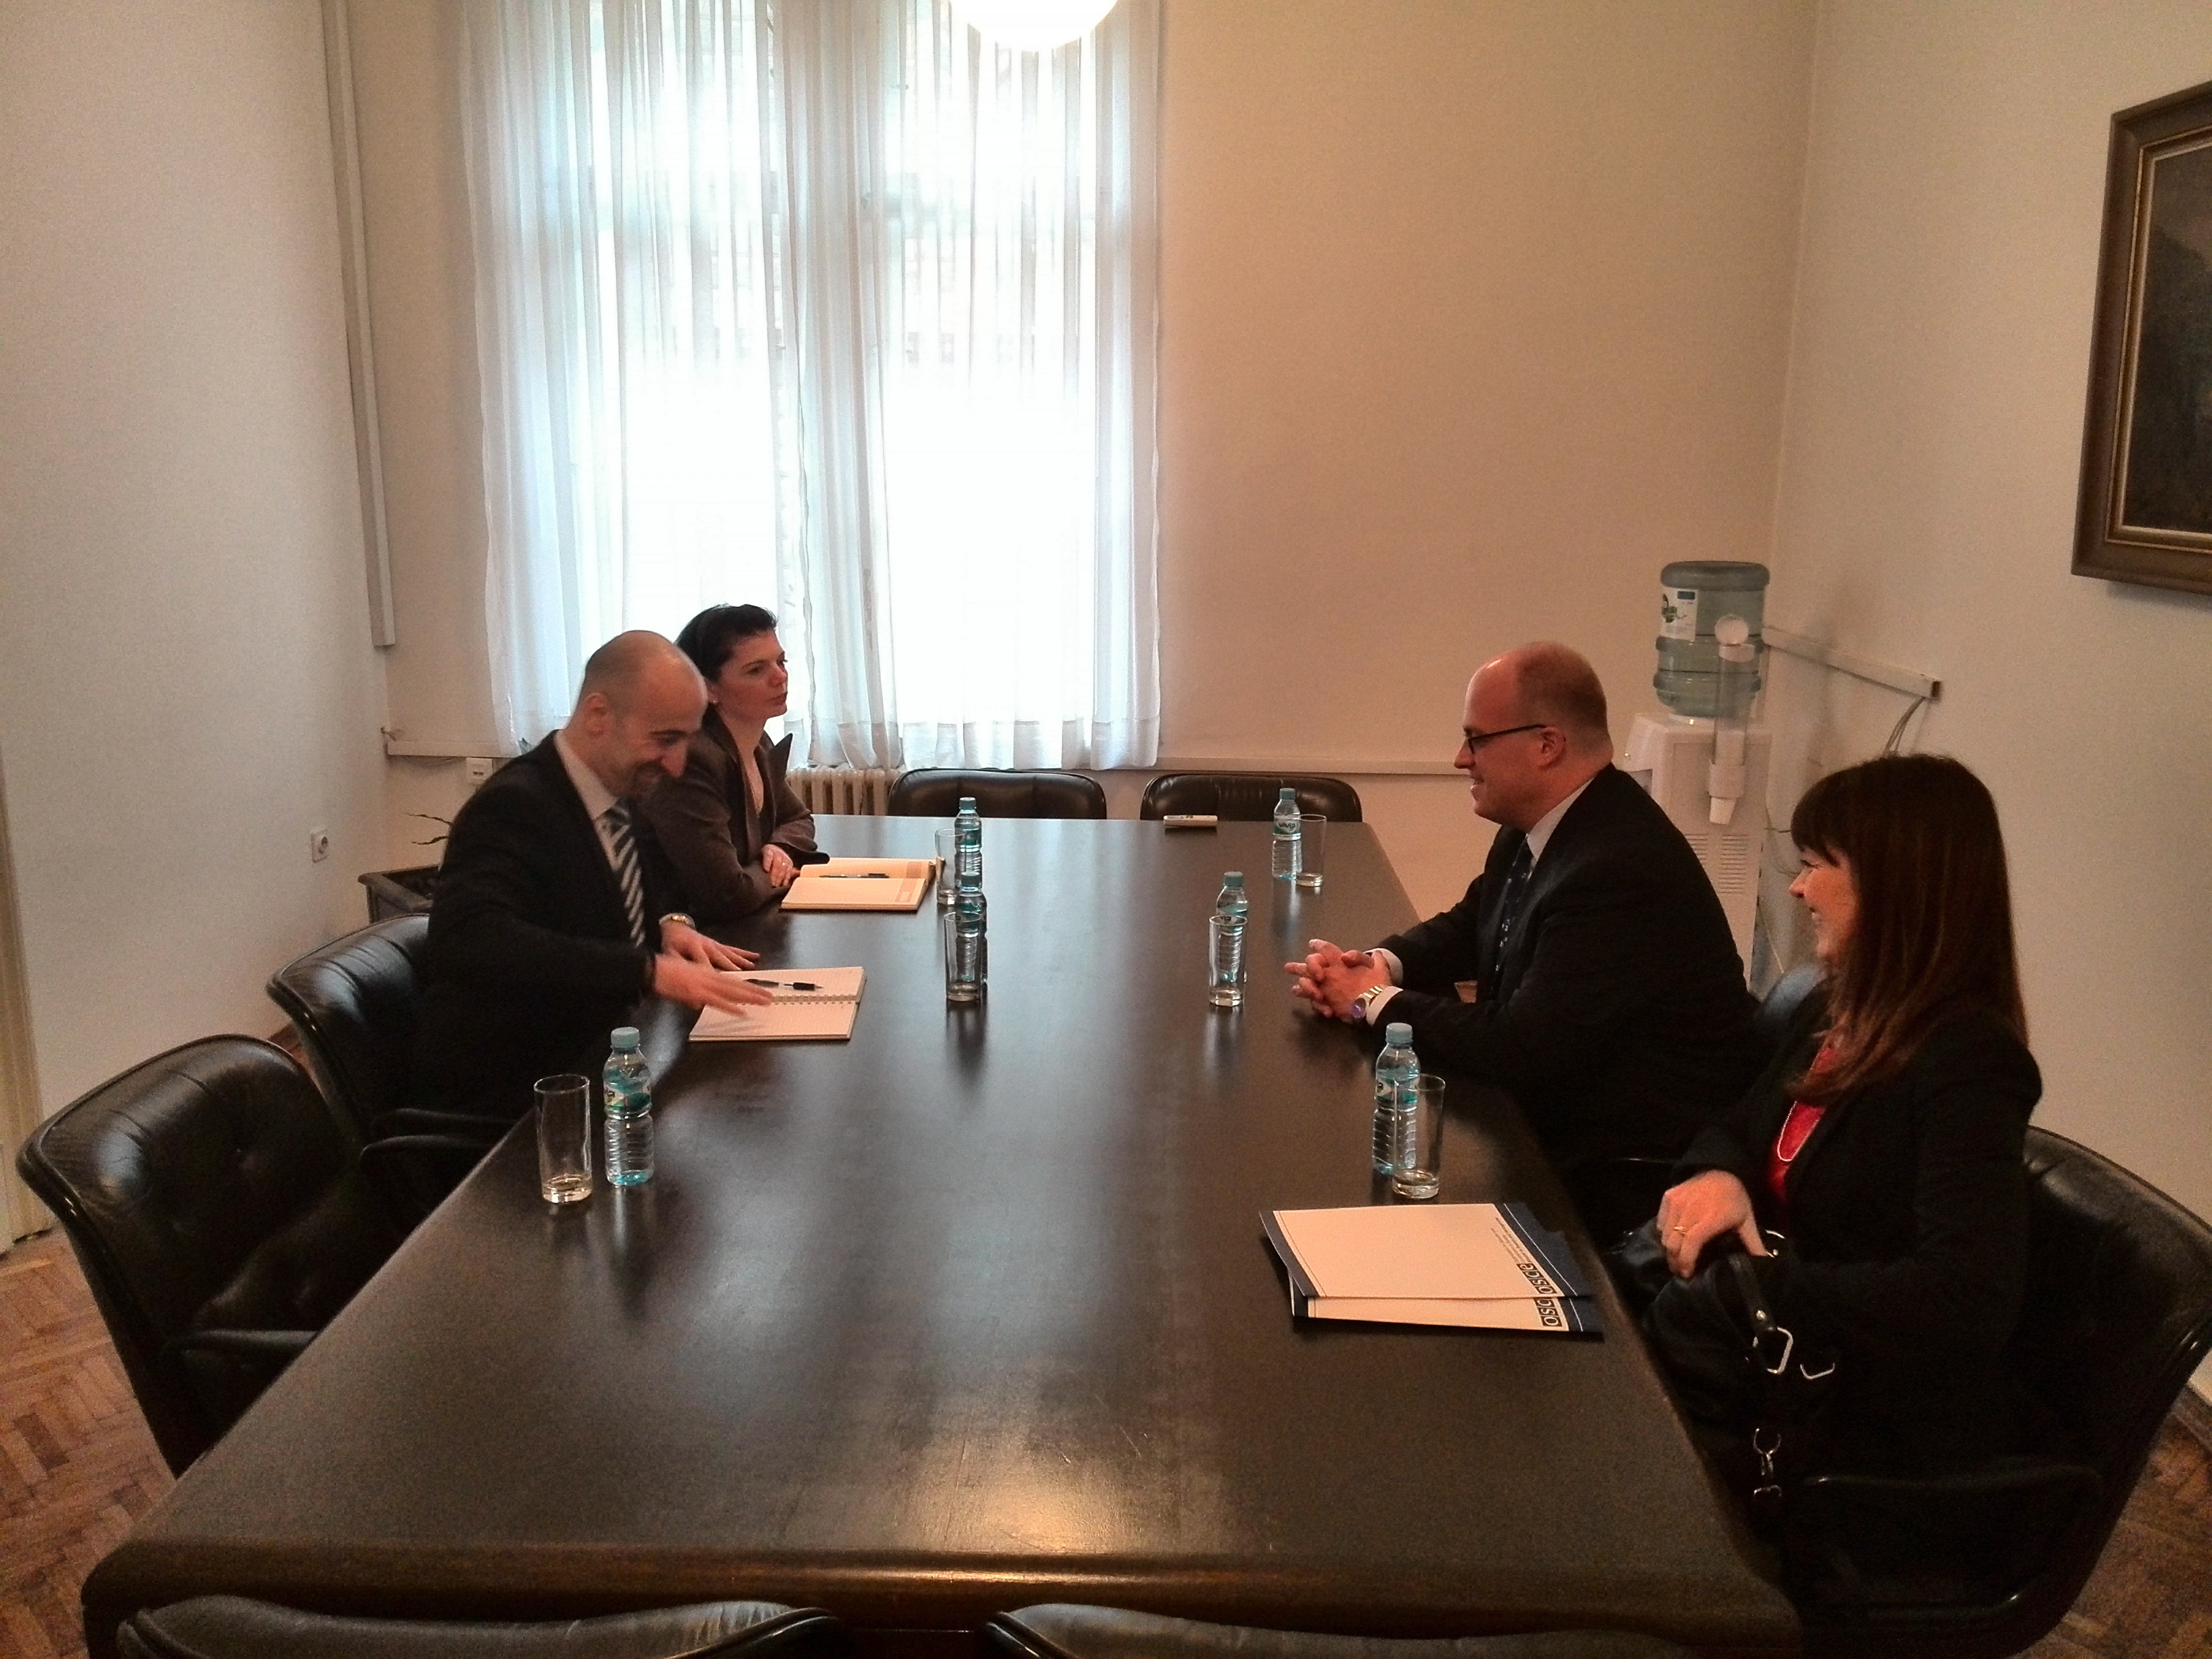 Picture for Ministar vanjske trgovine i ekonomskih odnosa BiH                            mr. Boris Tučić sastao se danas u svom Uredu sa šefom Misije OSCE-a u Bosni i Hercegovini Nj.E. ambasadorom Džonatanom Murom